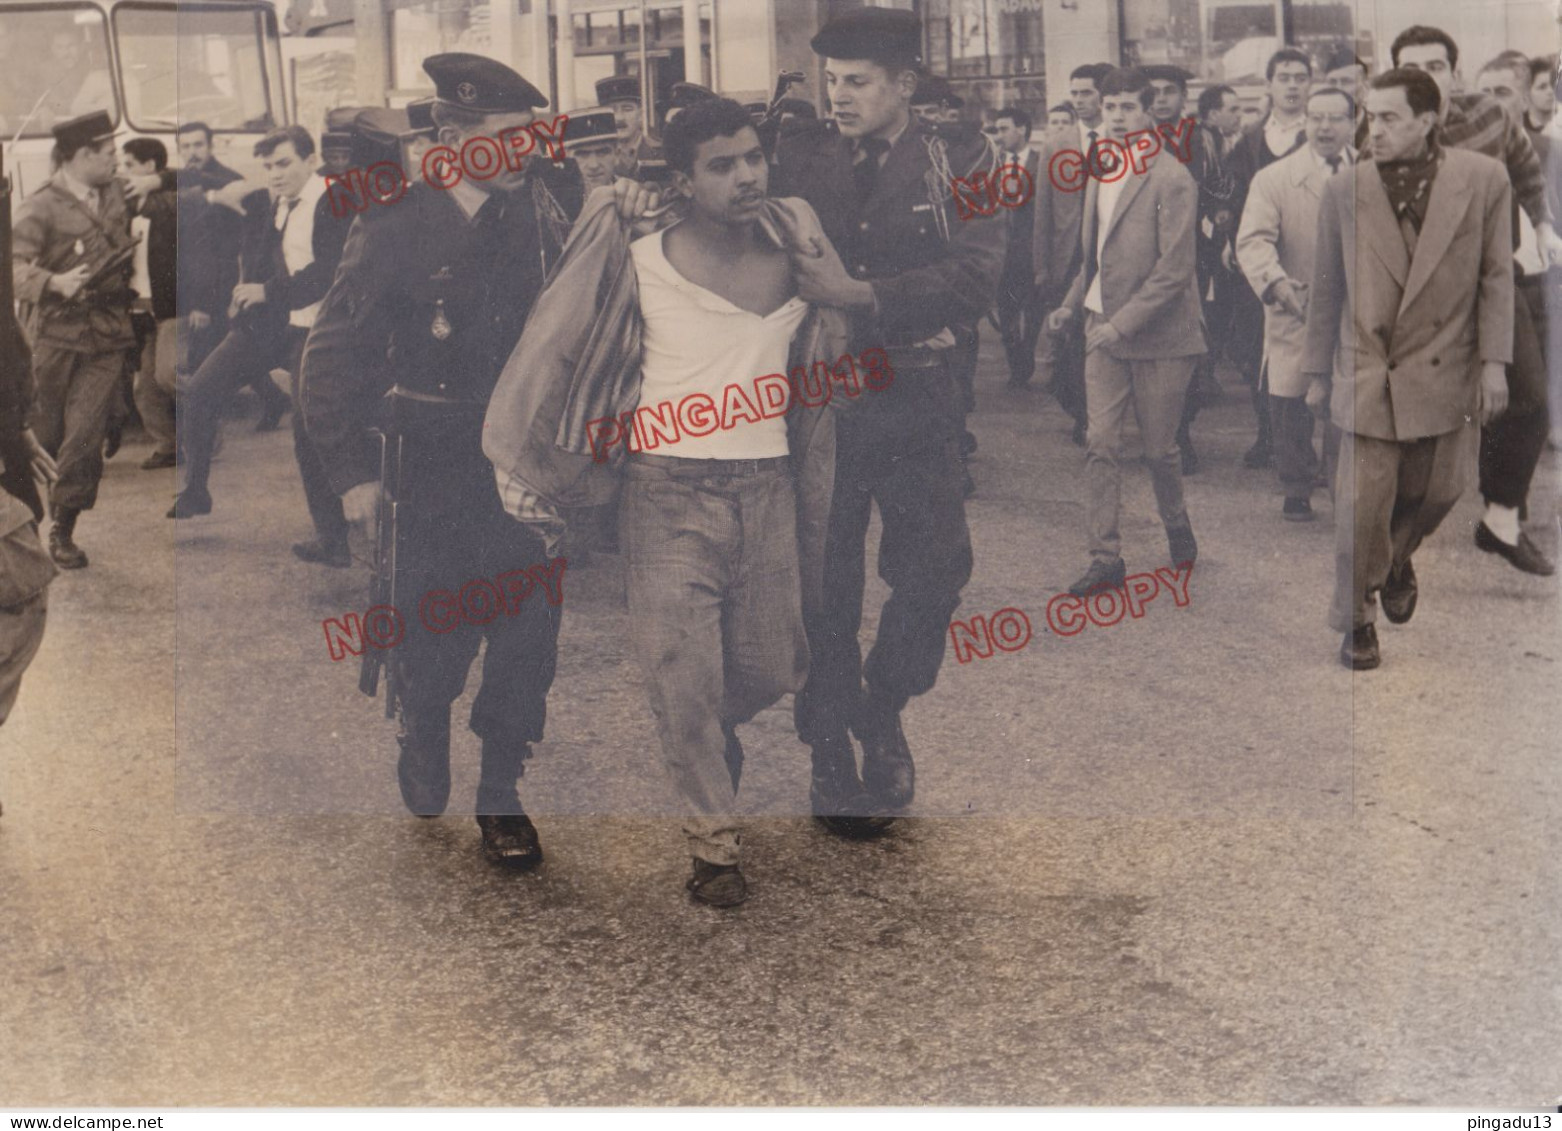 Fixe Guerre D'Algérie 1954-1962 Beau Format Argentique Arrestation - Oorlog, Militair